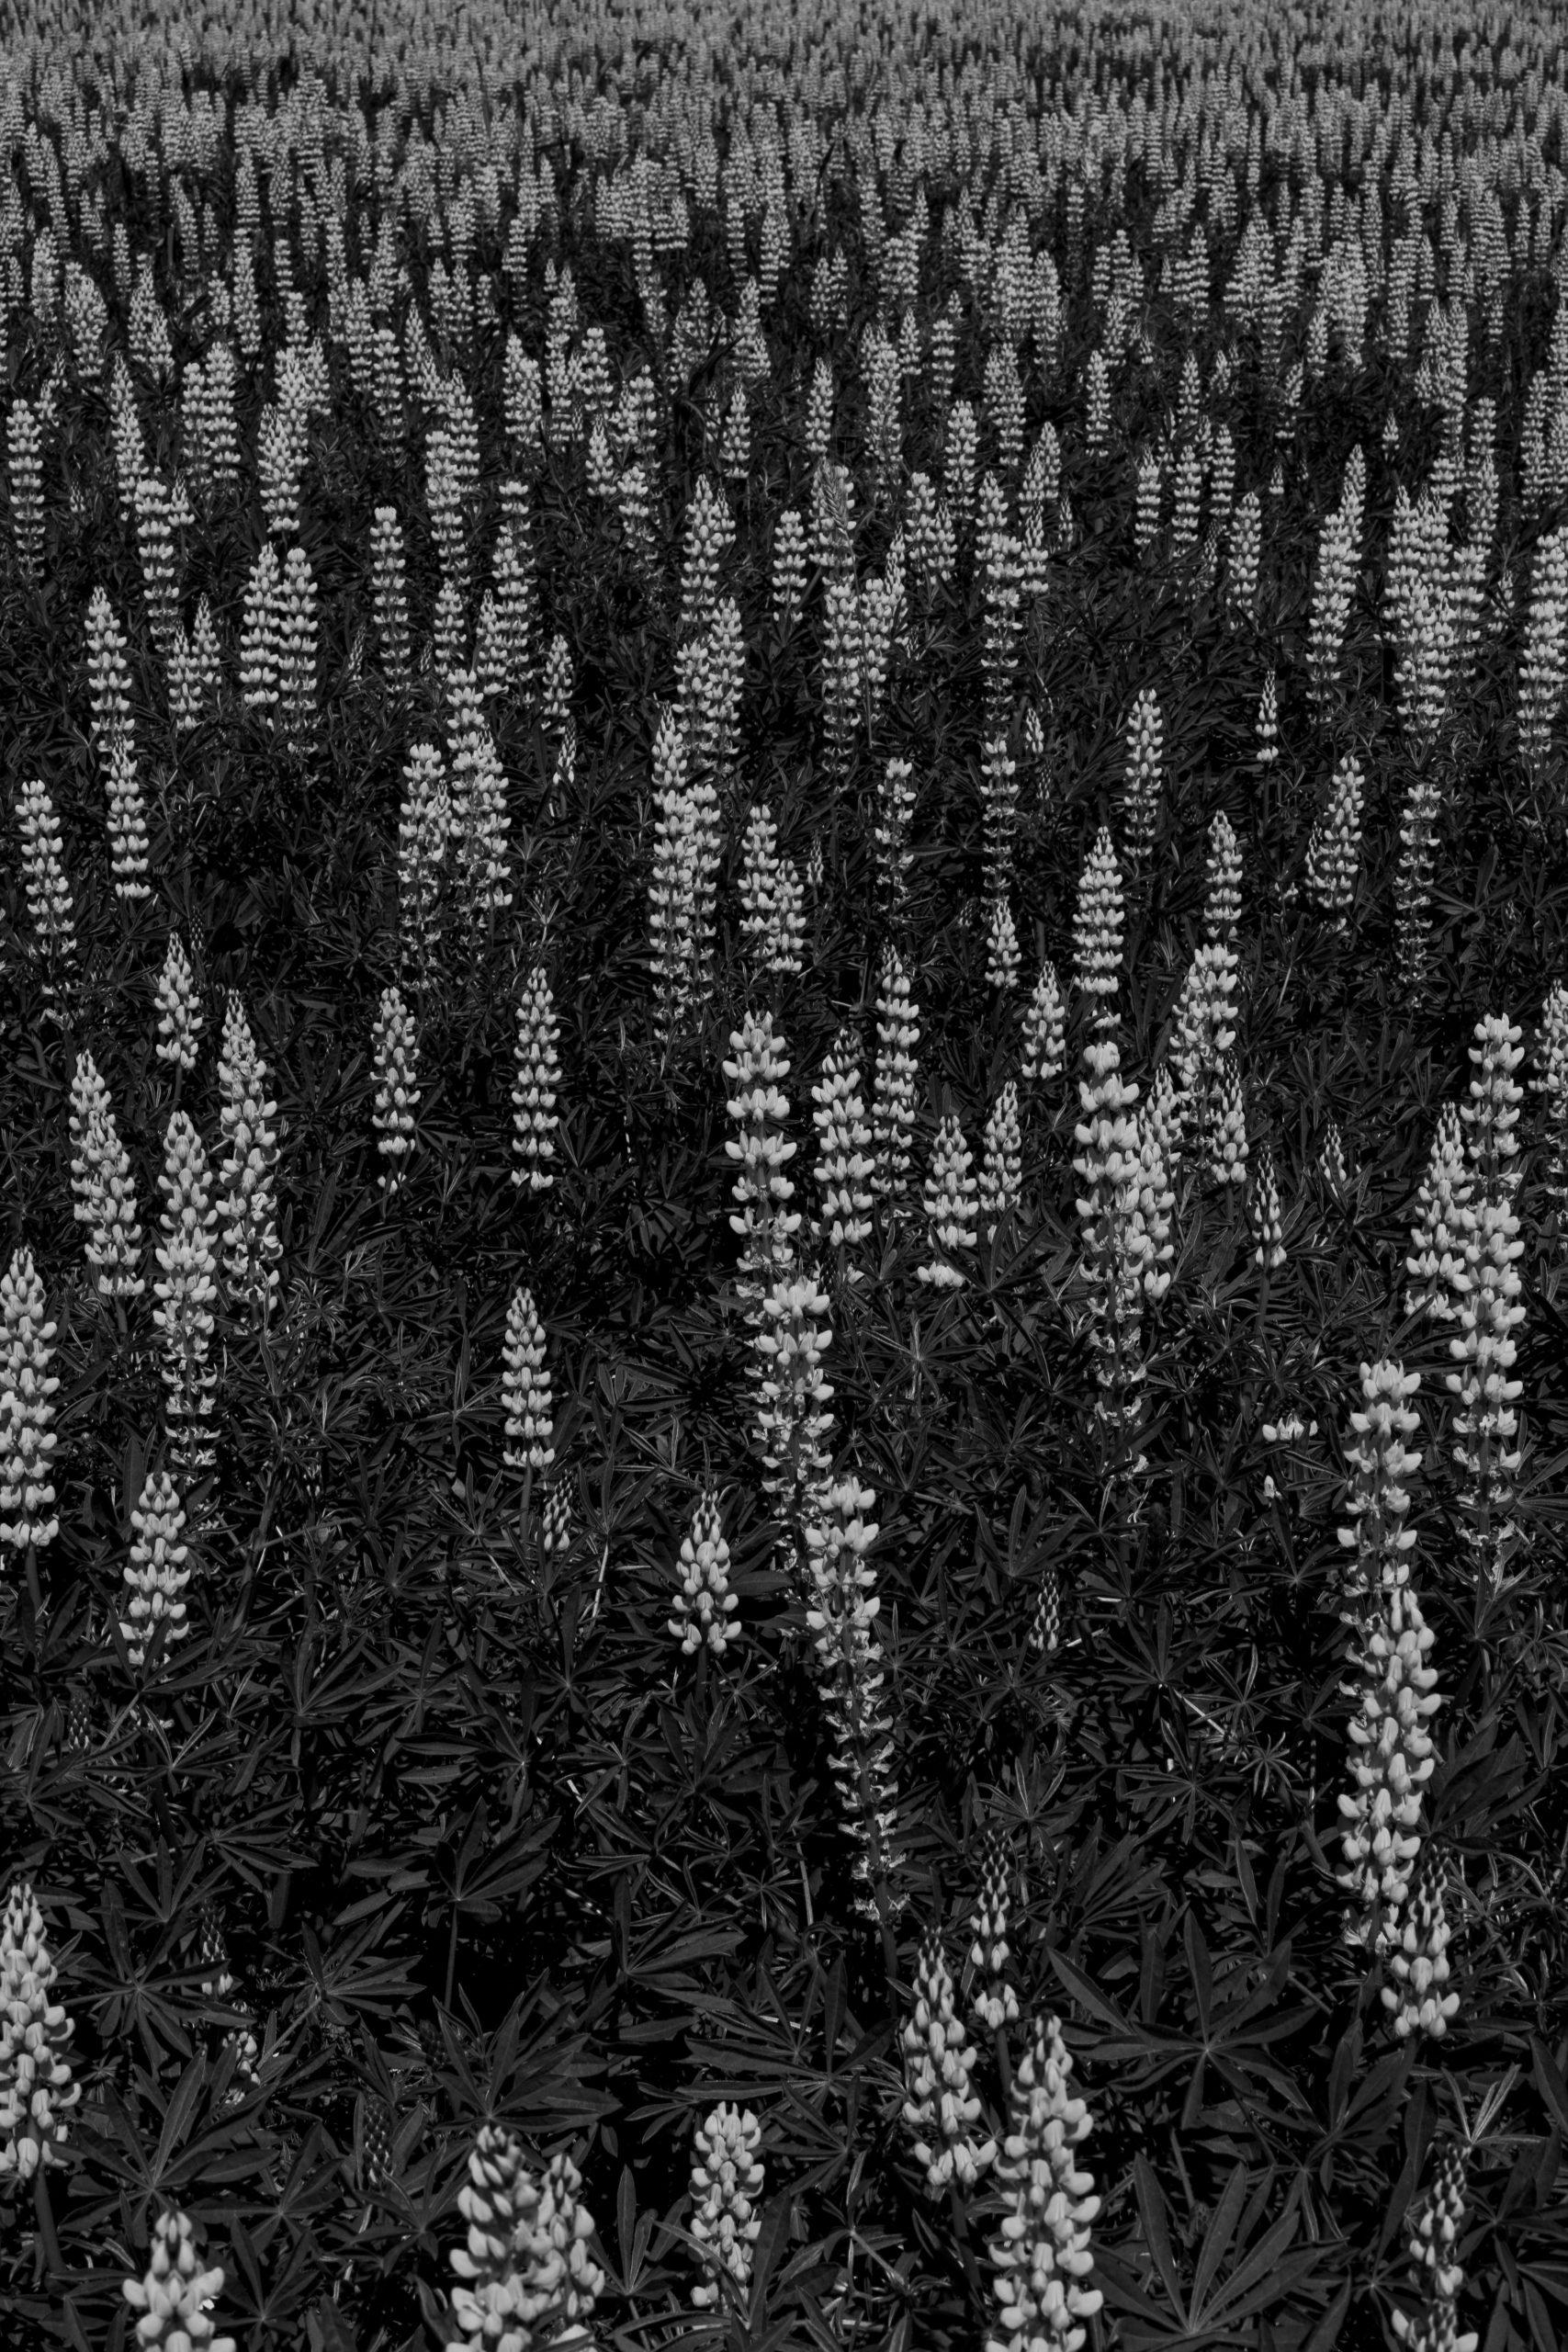 imagem a preto e branco de plantas